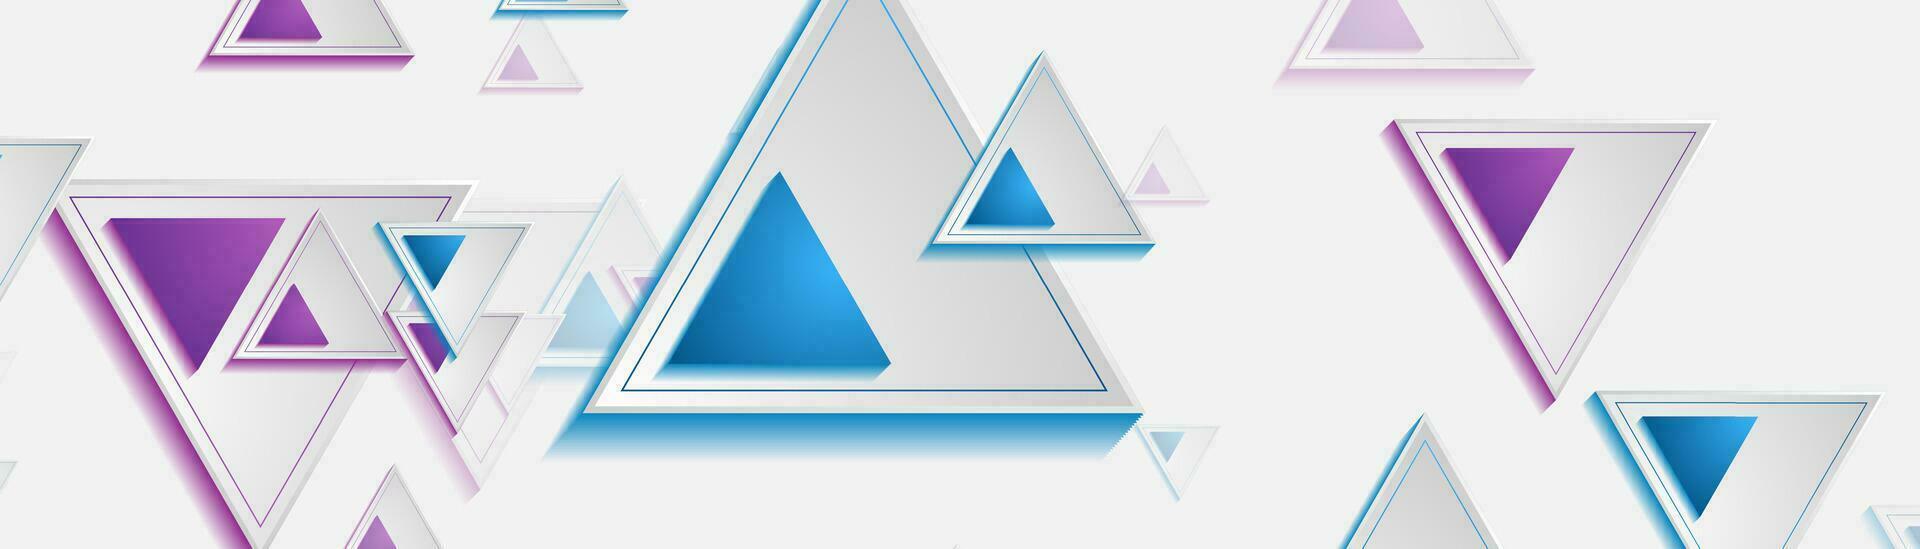 tech geometrisk trianglar abstrakt företags- baner vektor